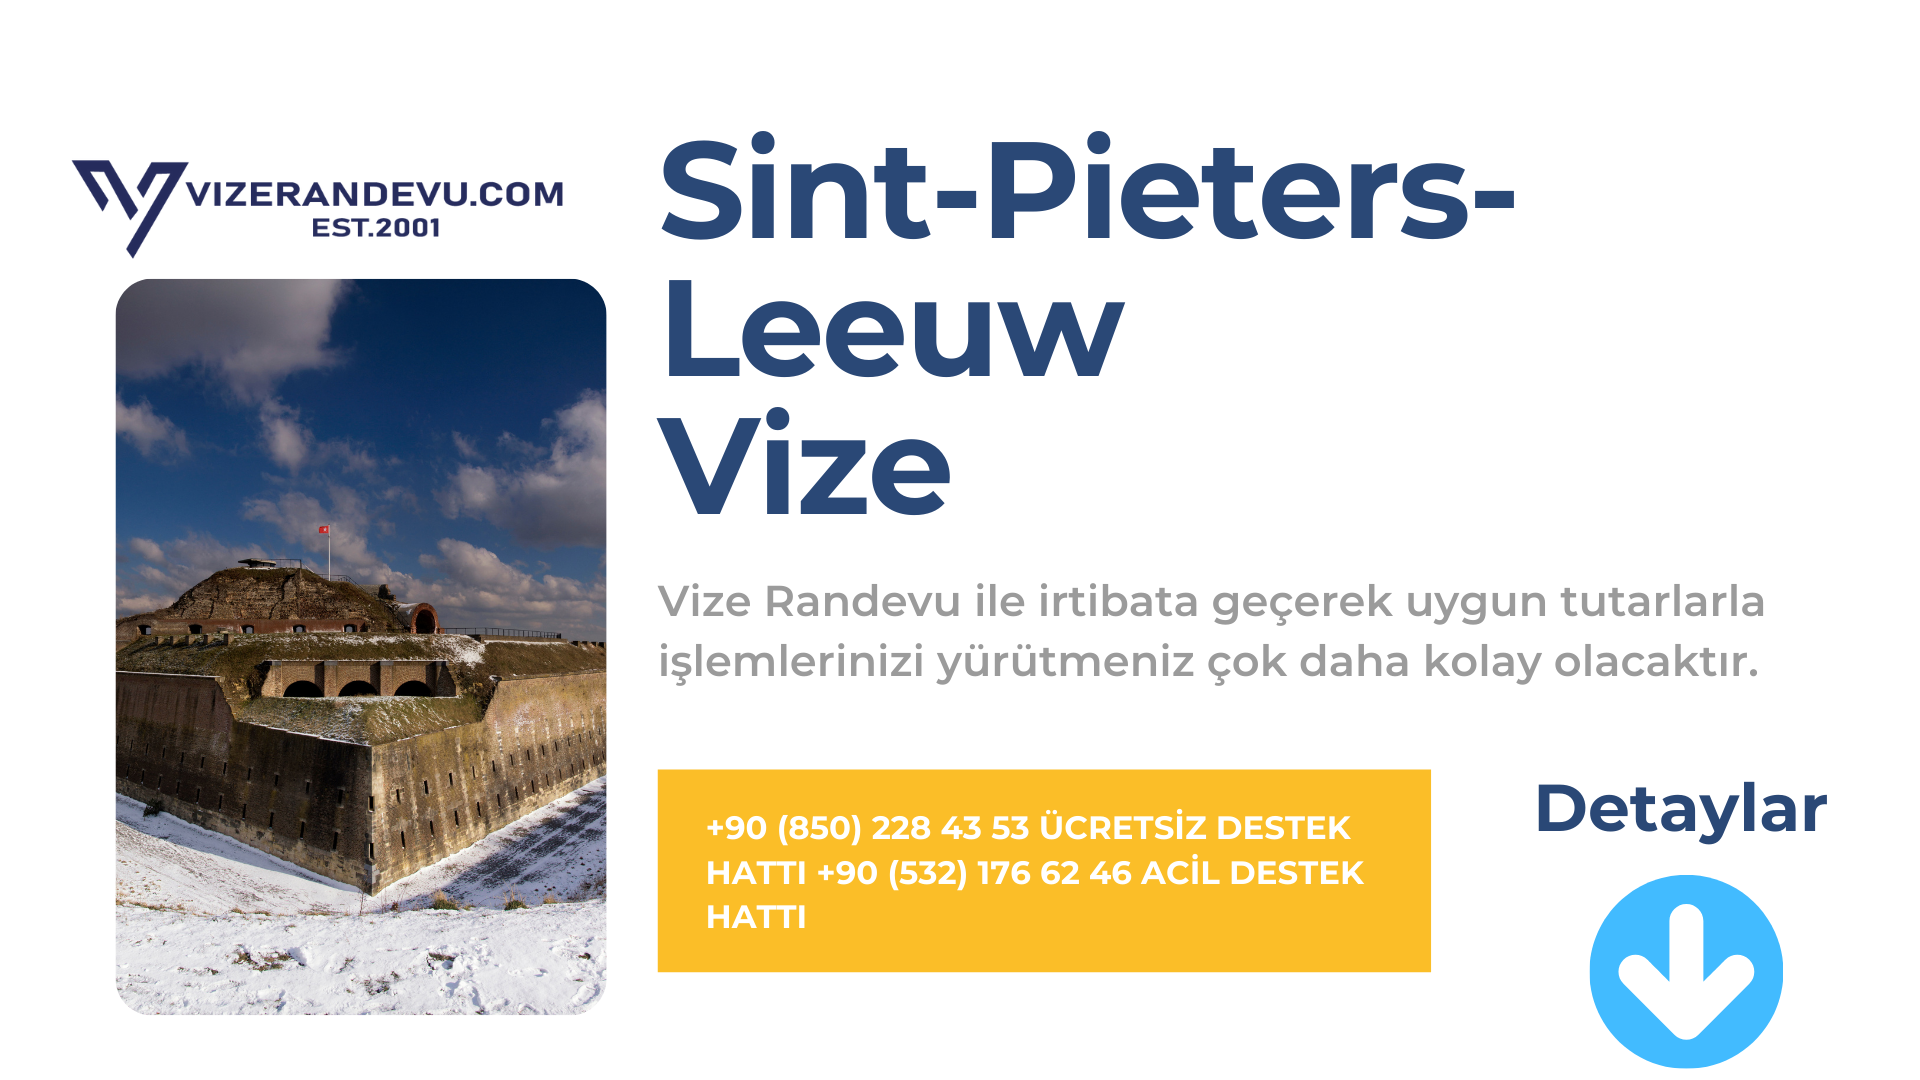 Sint-Pieters-Leeuw Vize